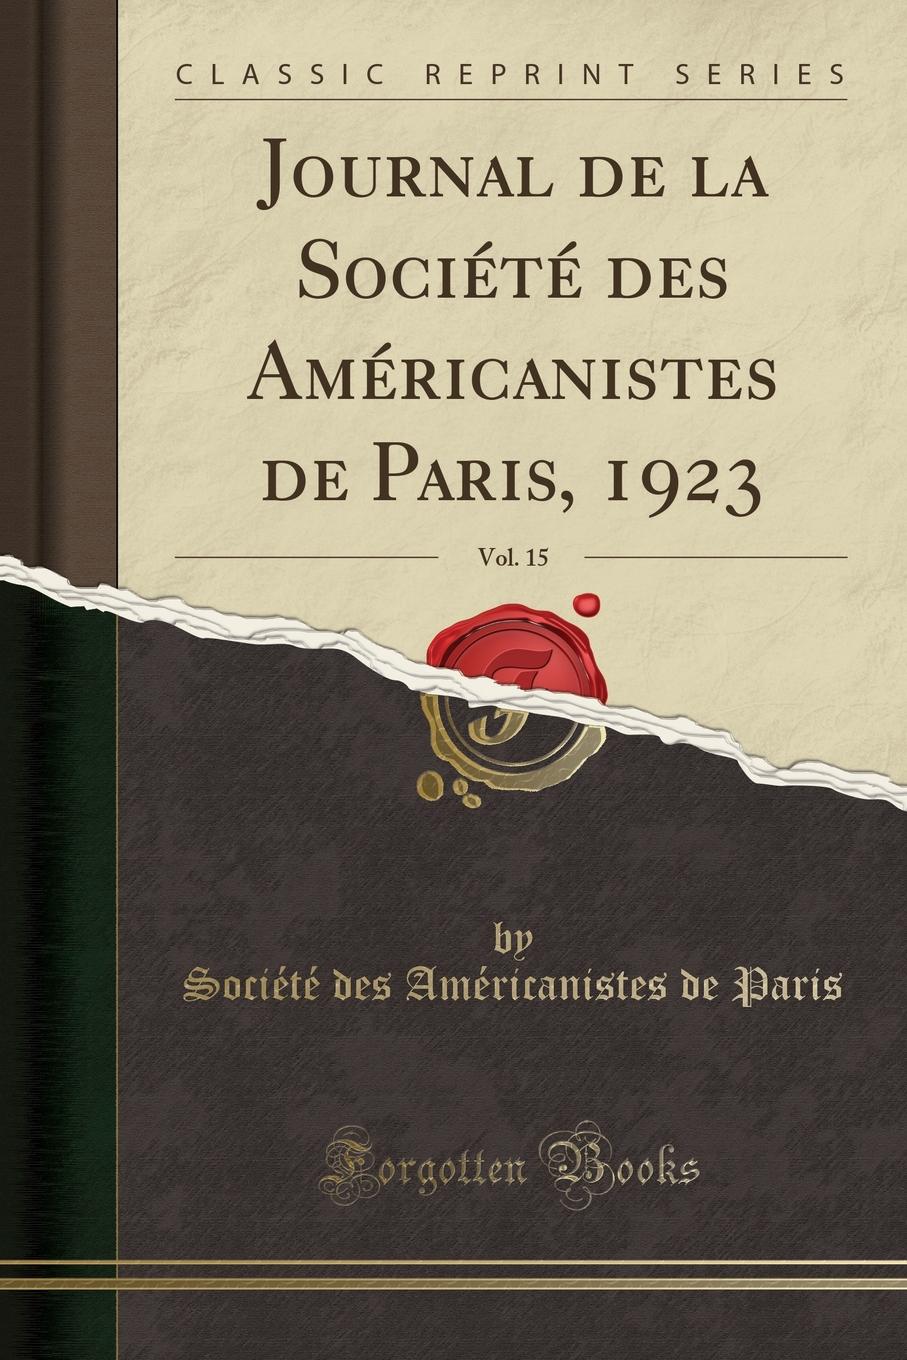 фото Journal de la Societe des Americanistes de Paris, 1923, Vol. 15 (Classic Reprint)